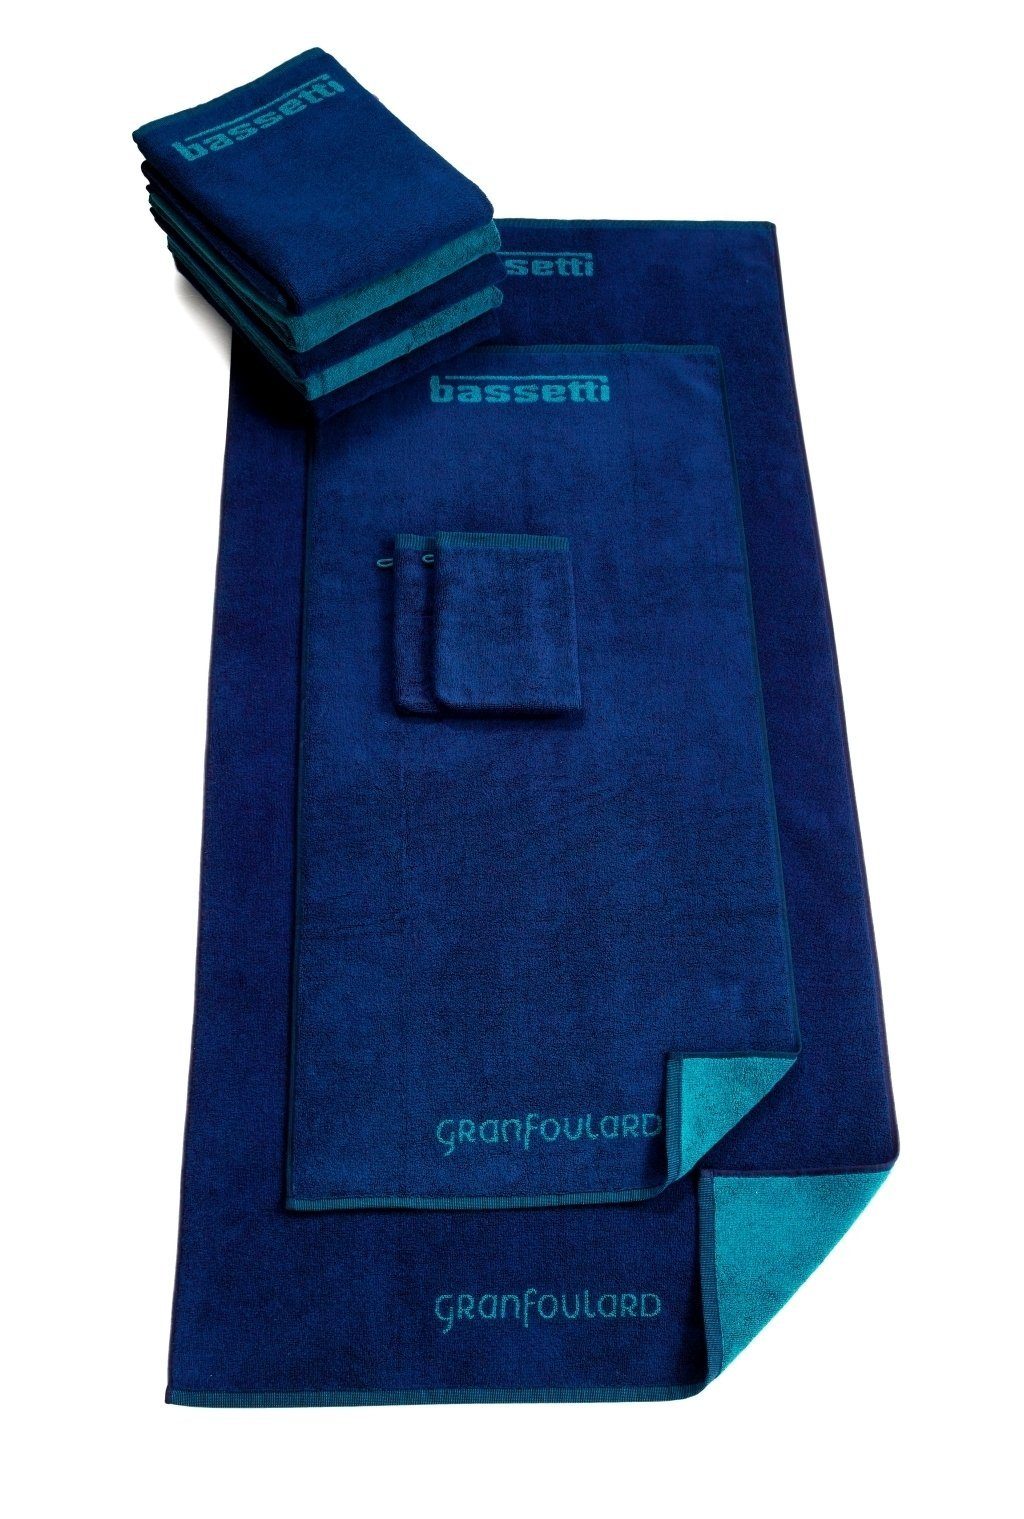 Wendedesign Bassetti blu Waschhandschuh mit SHADES,